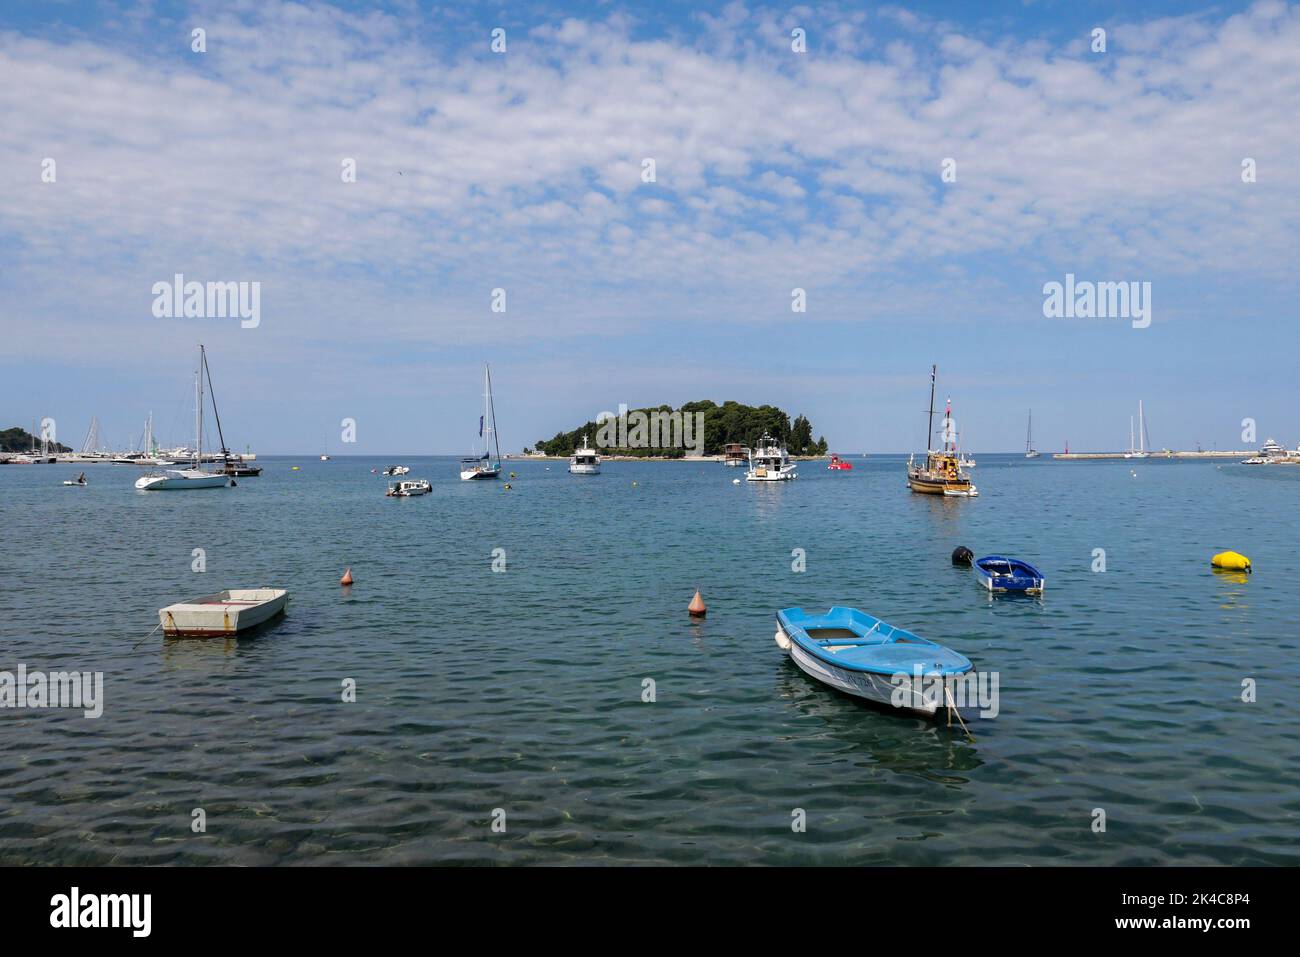 The sailboats on the port of Marina Rovinj, Croatia Stock Photo